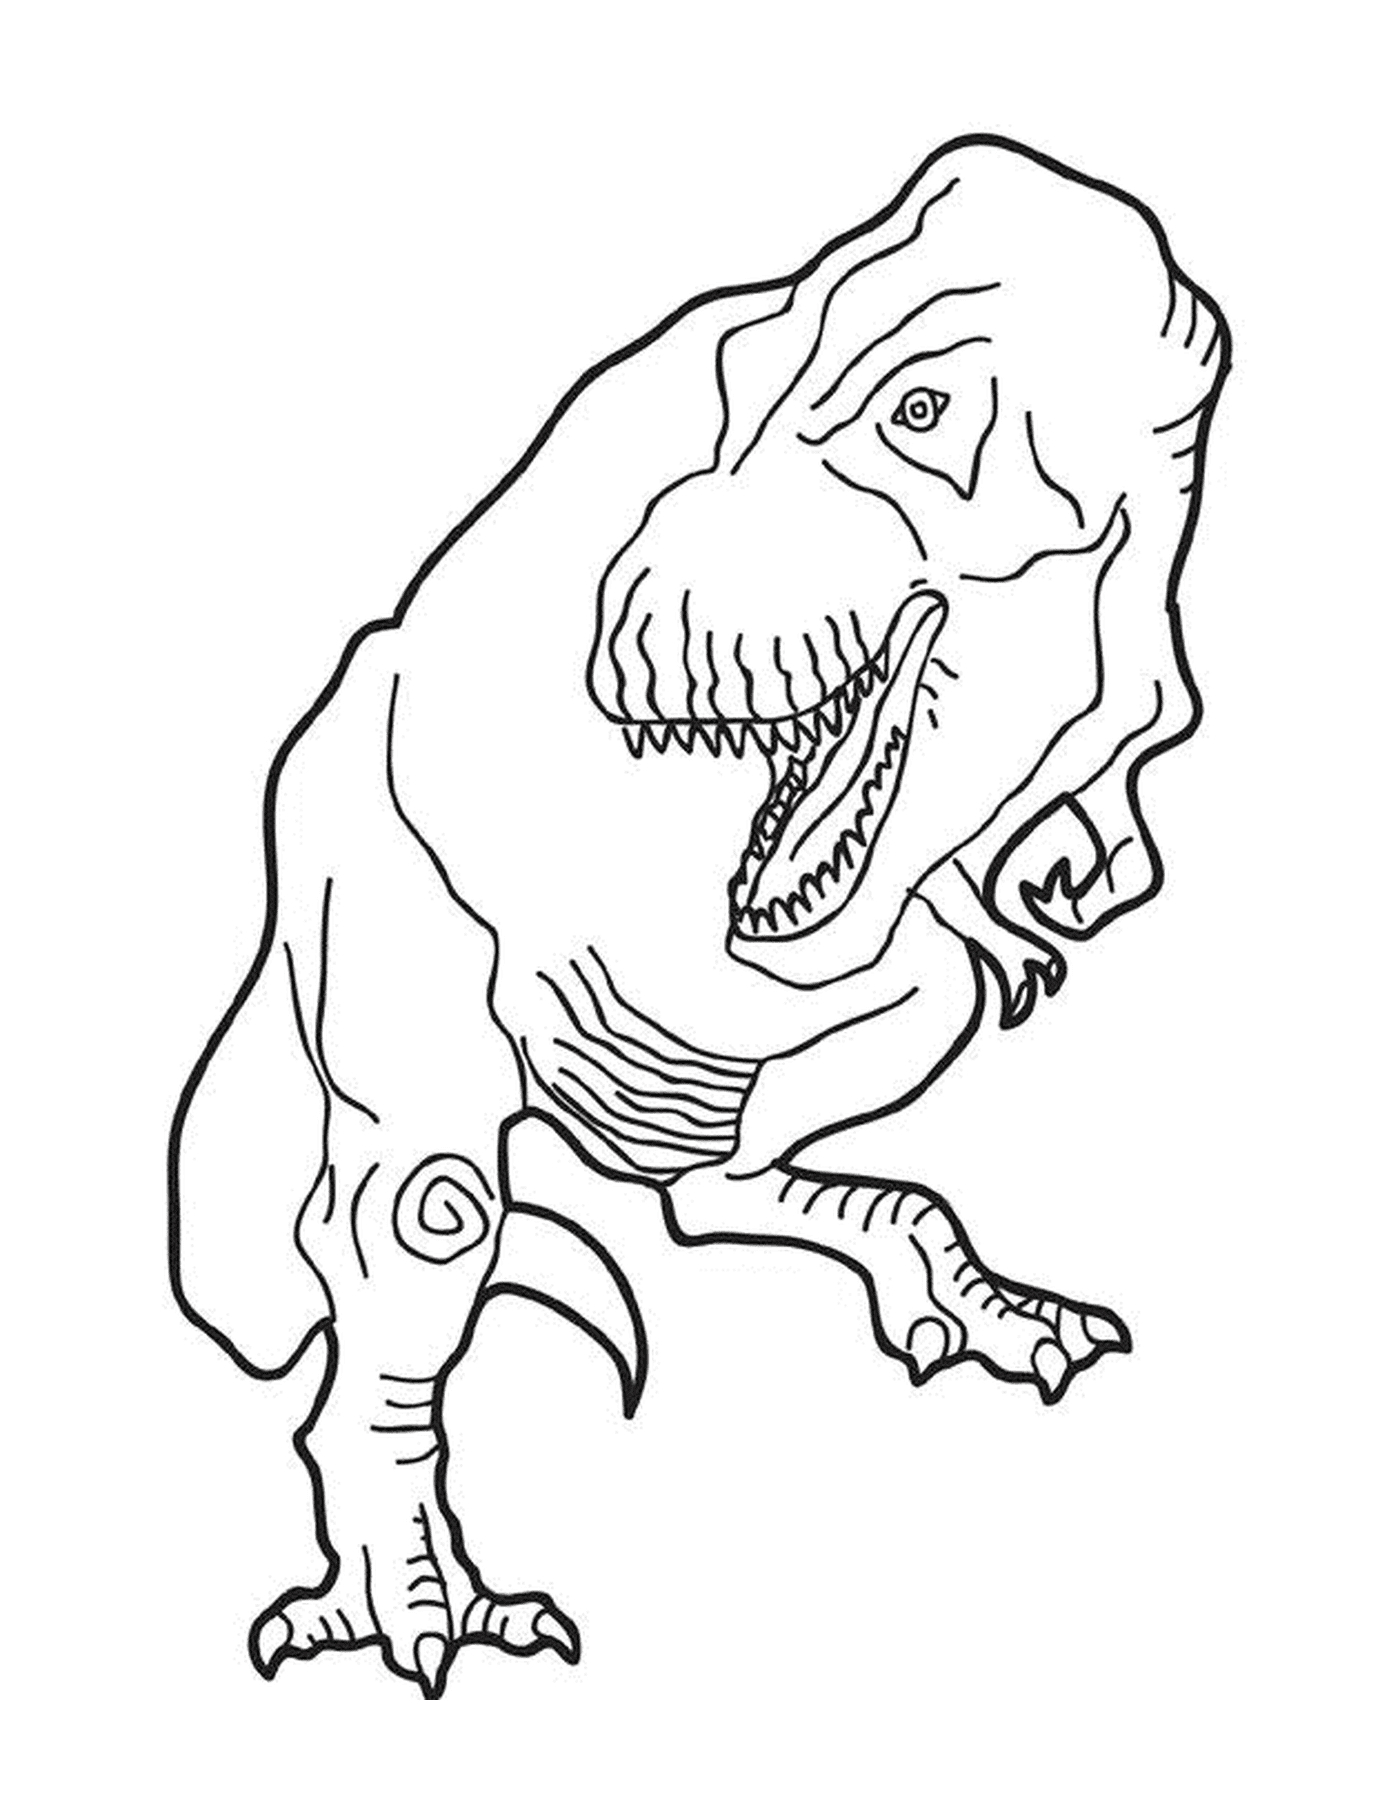  A t-rex standing 